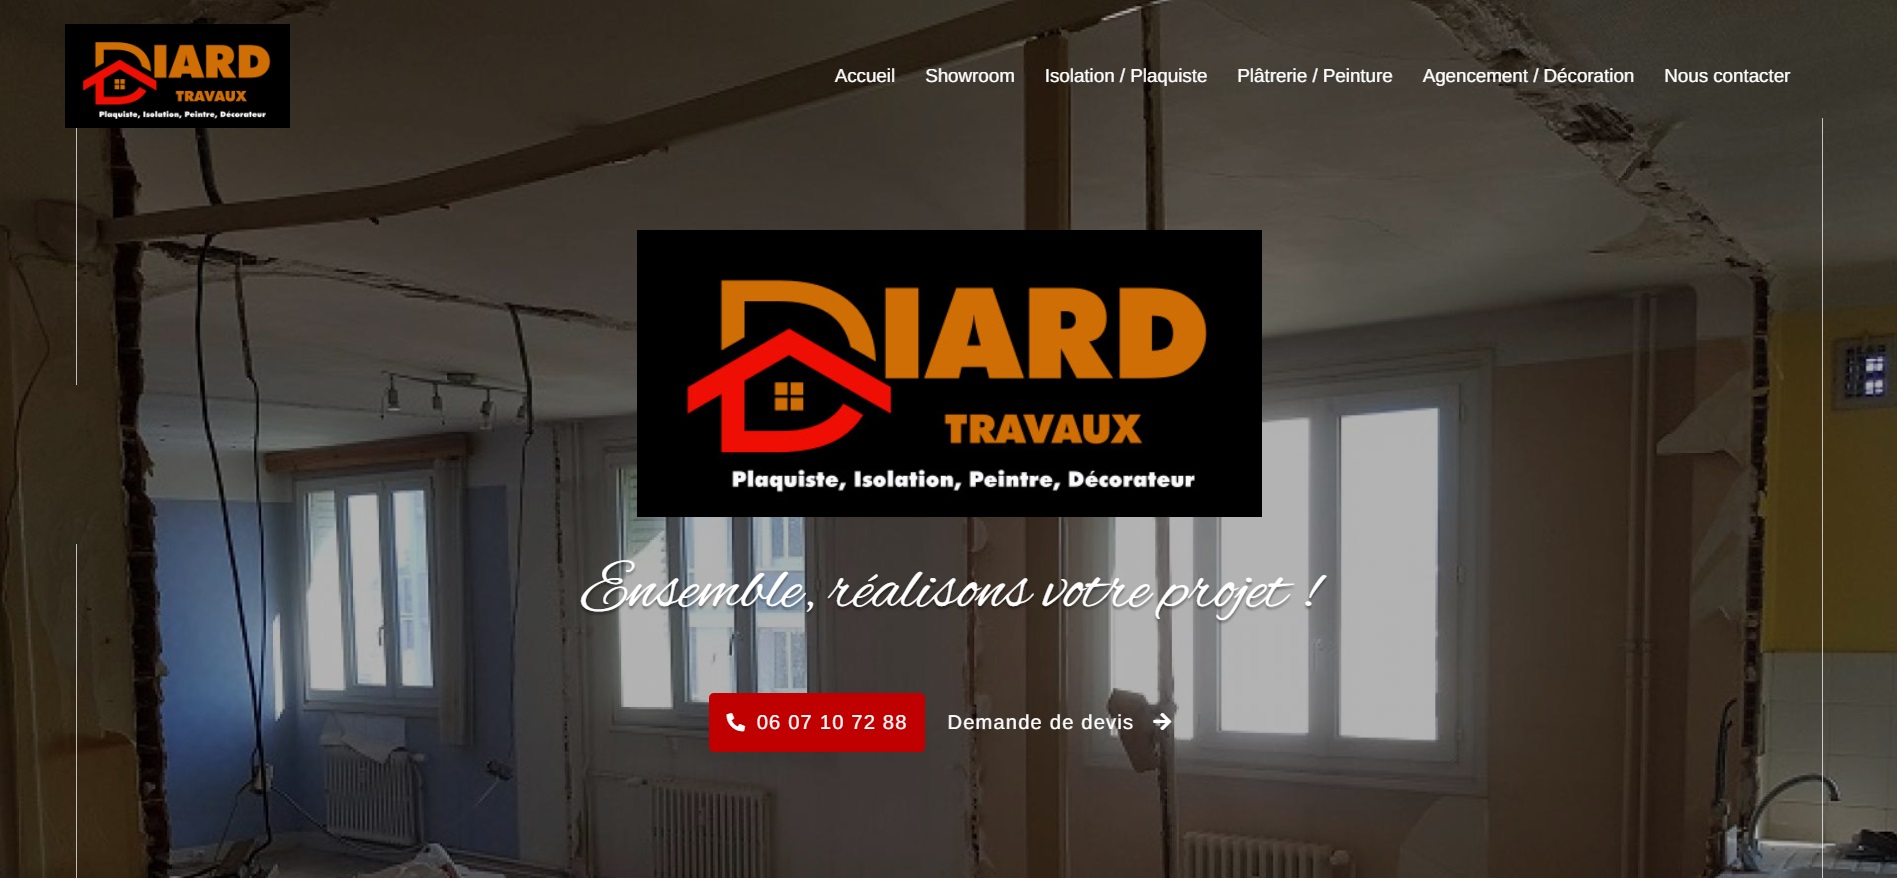  DIARD TRAVAUX - Entreprise d’Isolation de Bourg-en-Bresse